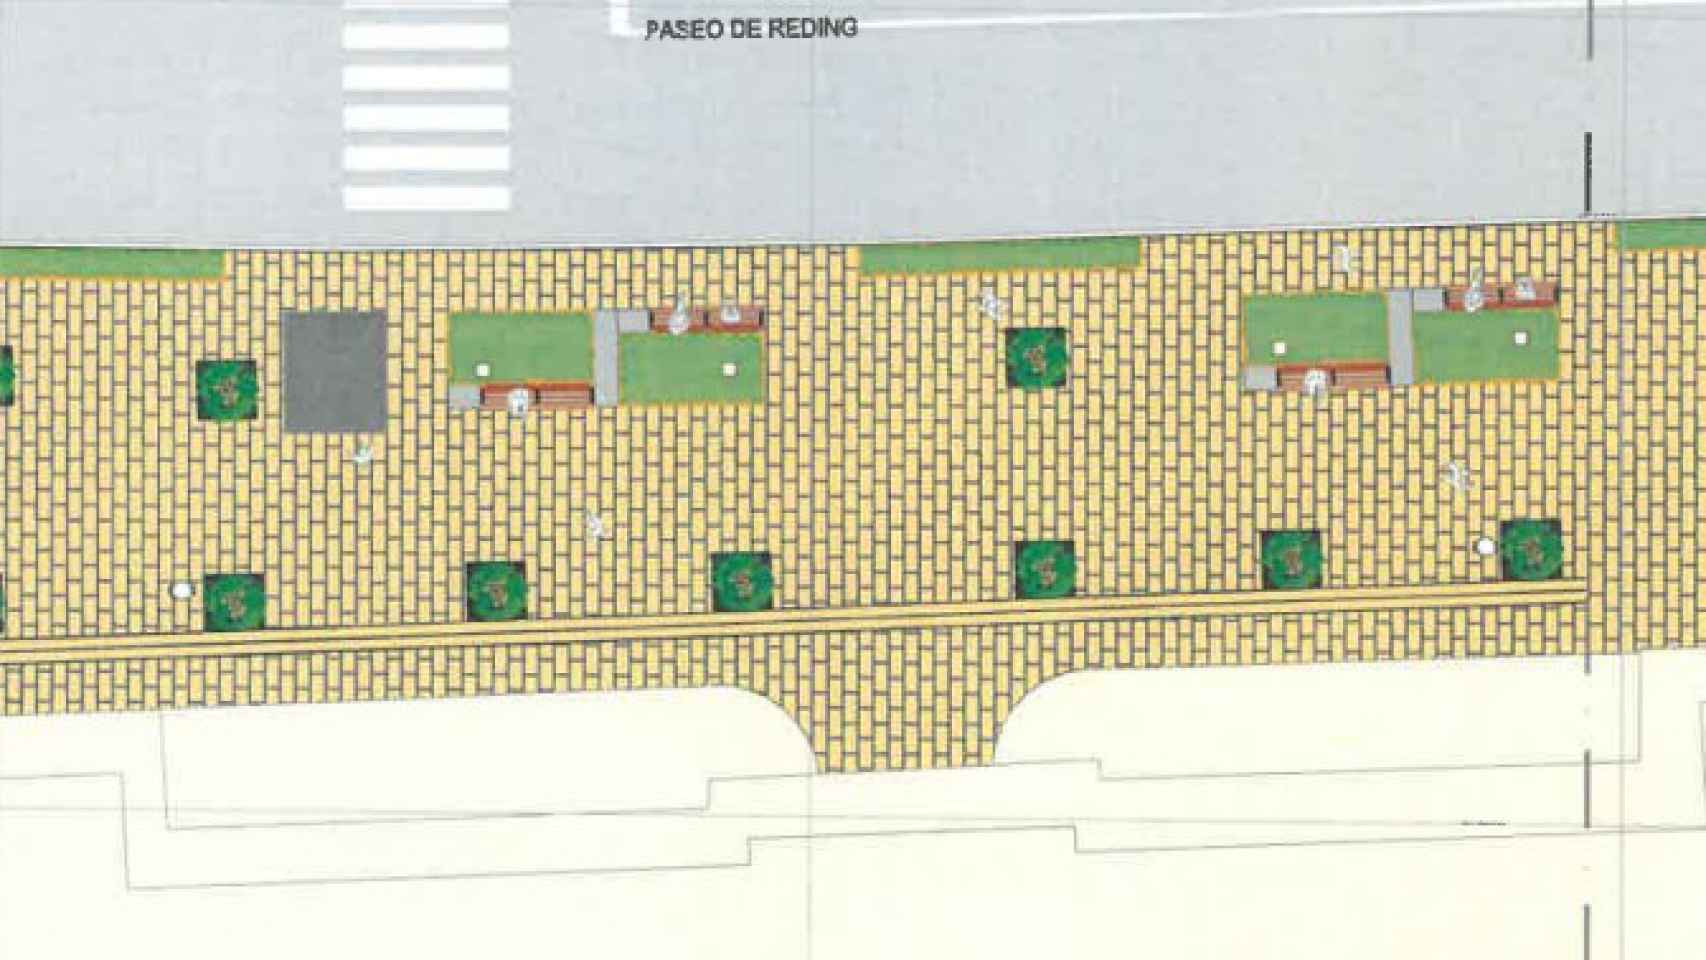 Diseño de la operación en parte del Paseo de Reding de Málaga.